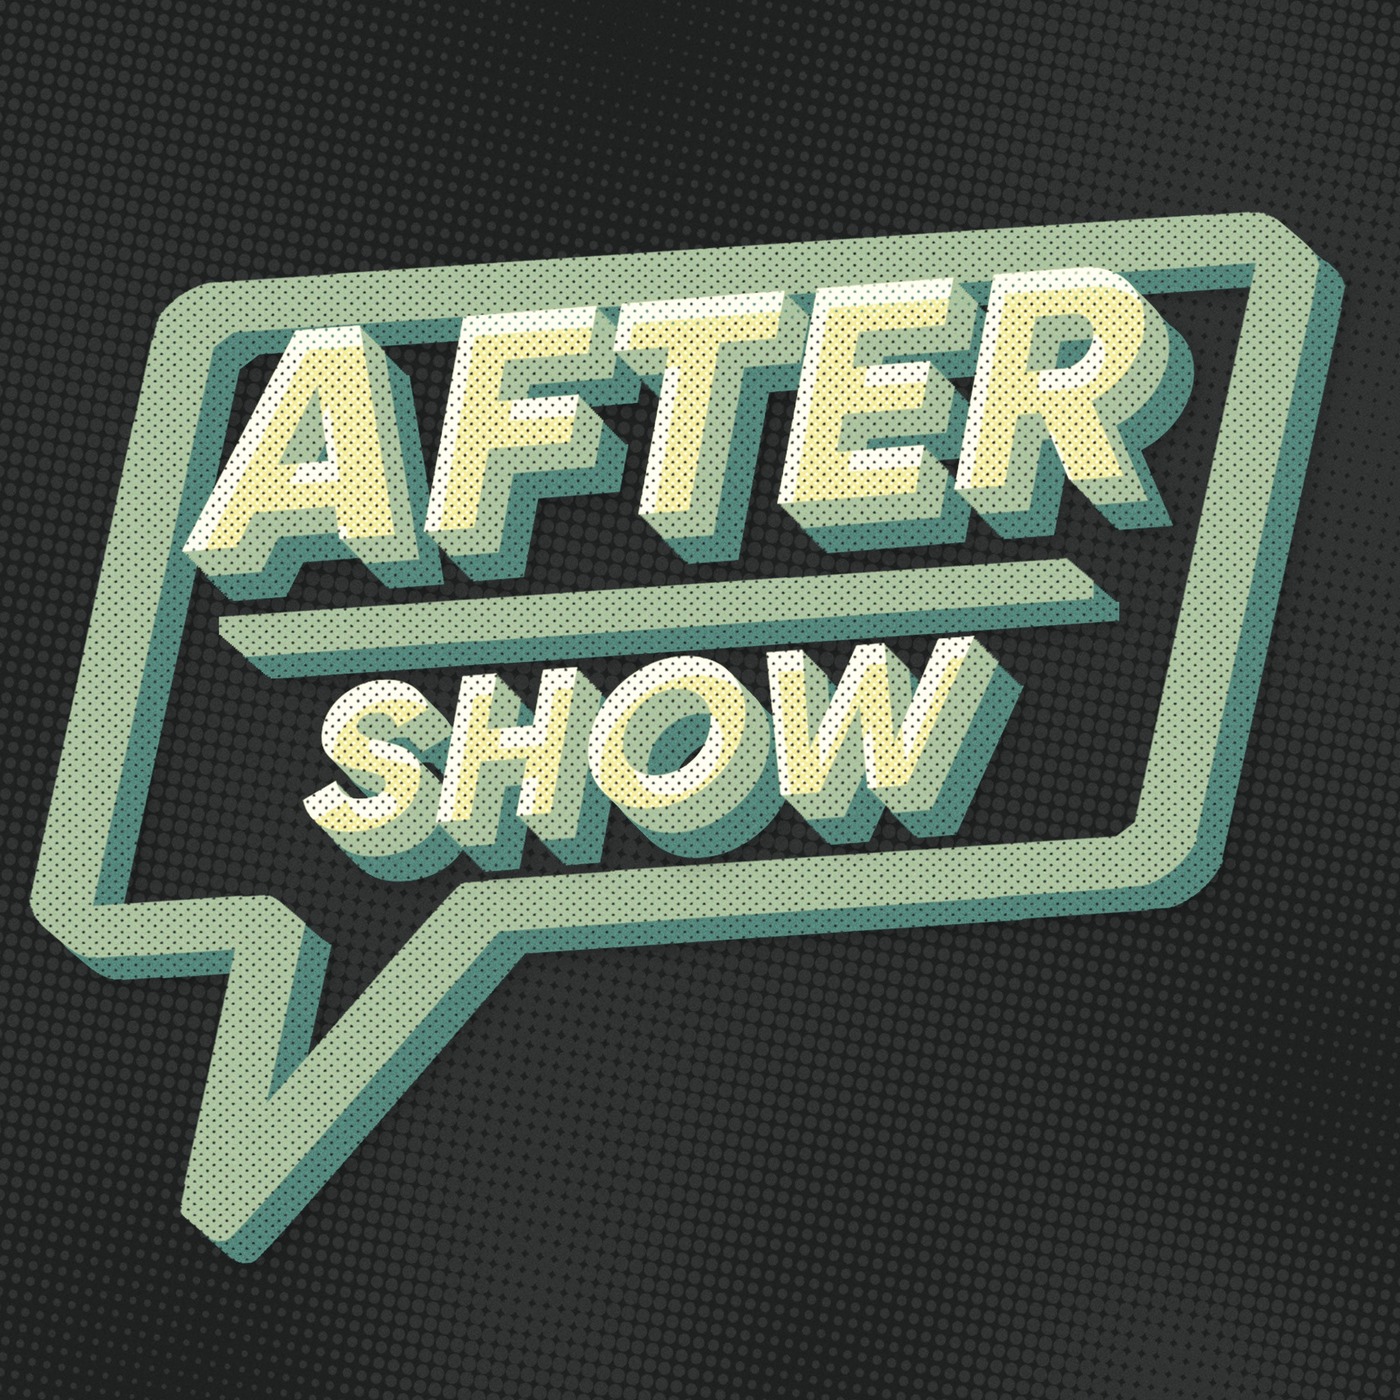 Andor Episode 12 Aftershow